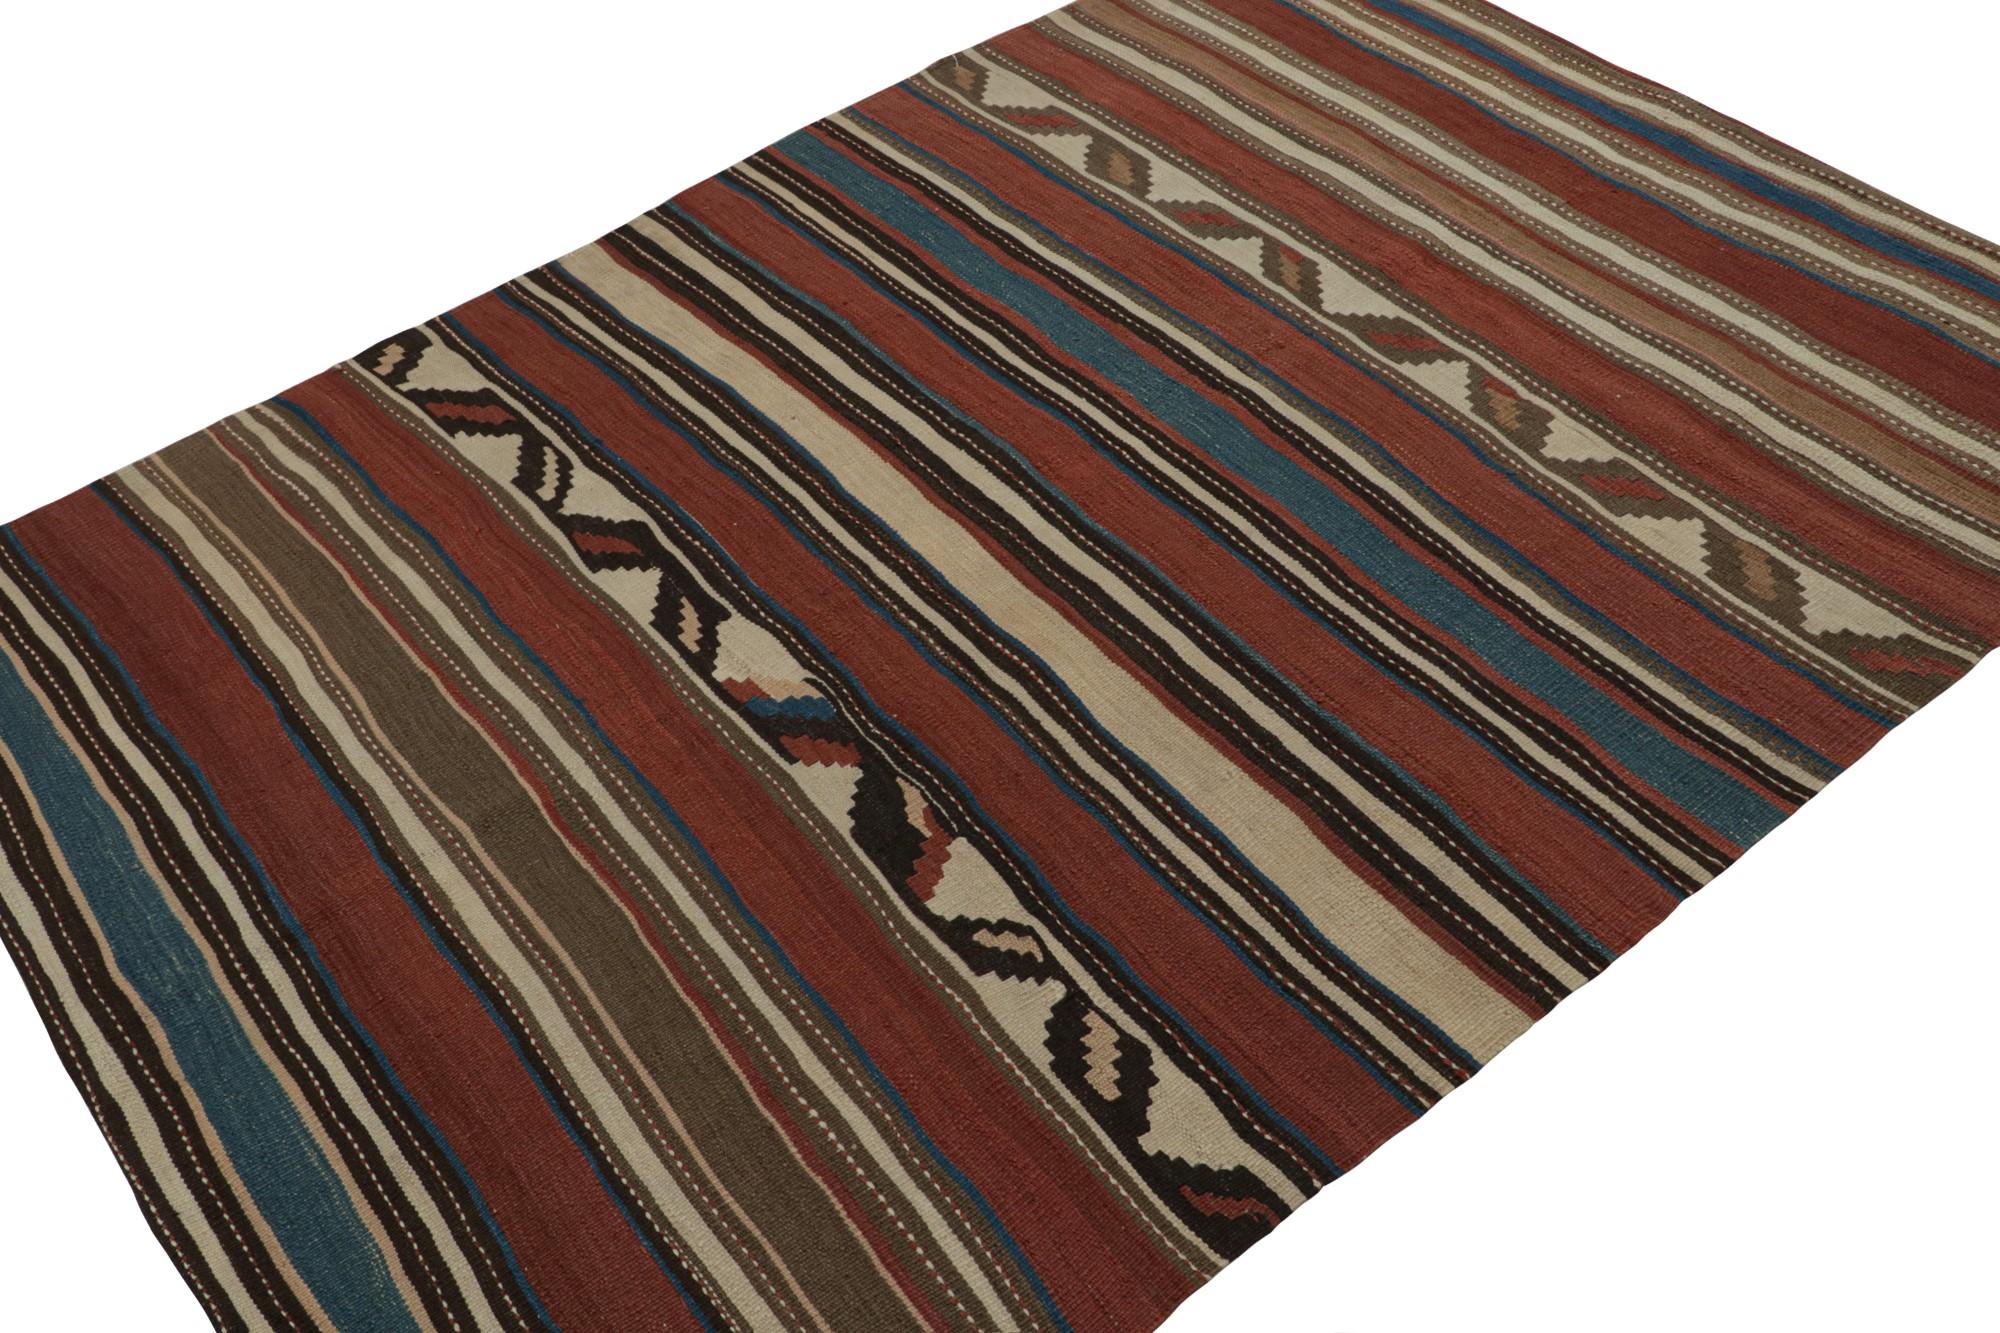 Ce Kilim tribal vintage de 5x6 est un nouvel ajout aux collections du milieu du siècle de Rug & Kilim. Tissé à la main en laine, il provient d'Afghanistan vers 1950-1960.

Sur le Design : 

Ce tissage plat présente une union de motifs tribaux et de